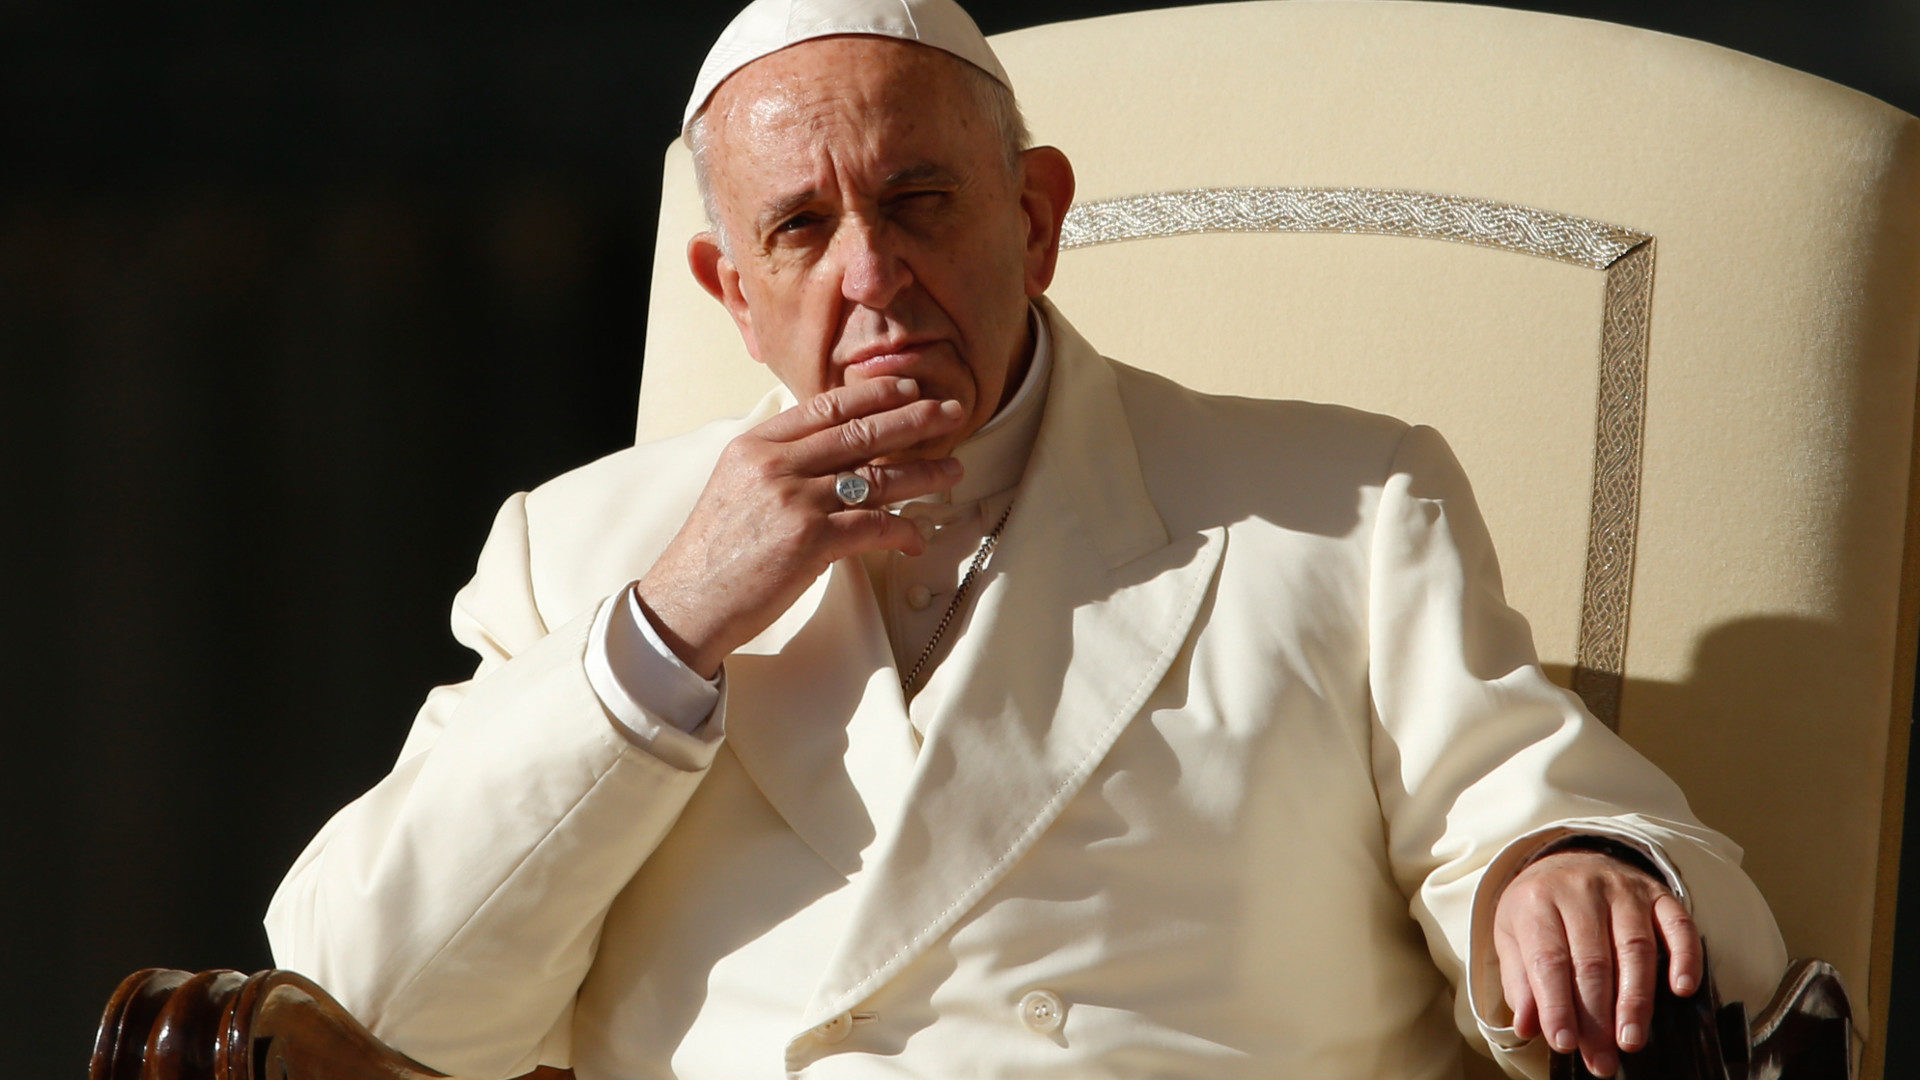 Papst Franziskus während einer Generalaudienz im Vatikan